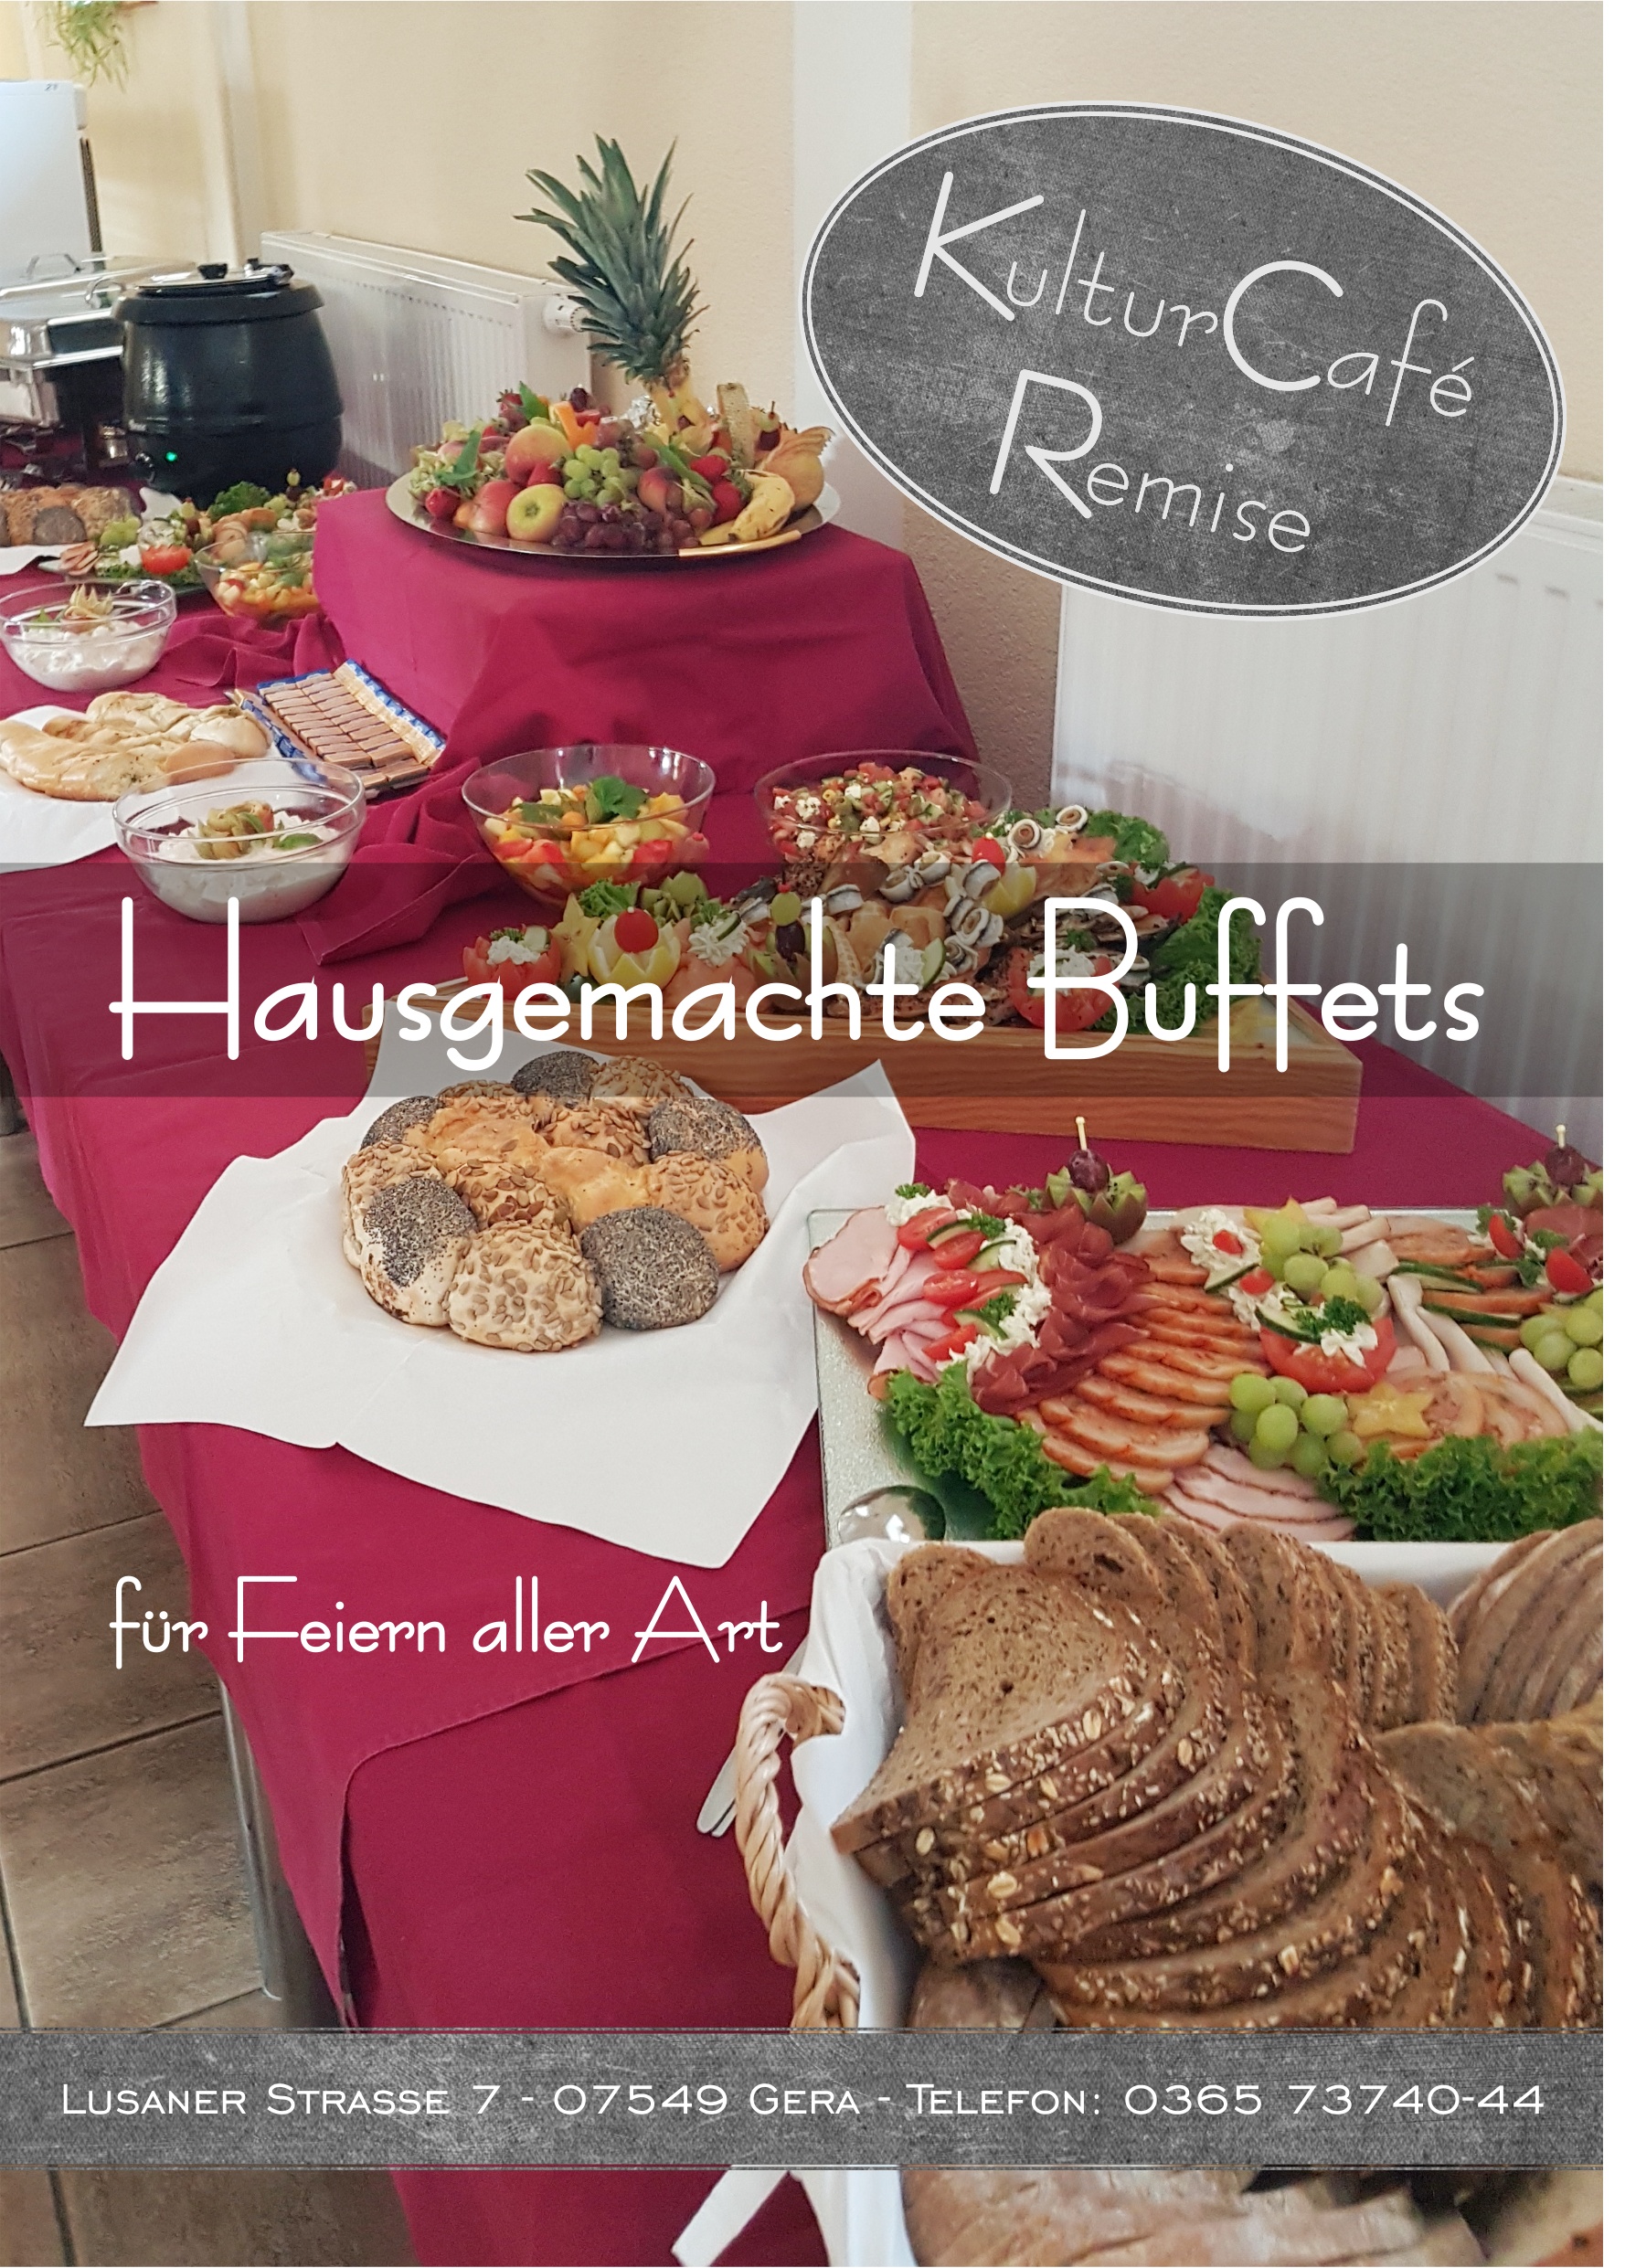 Hausgemachte Buffets für feiern aller Art Lusaner Strasse 7 - 07549 Gera - Telefon: 0365 73740-44